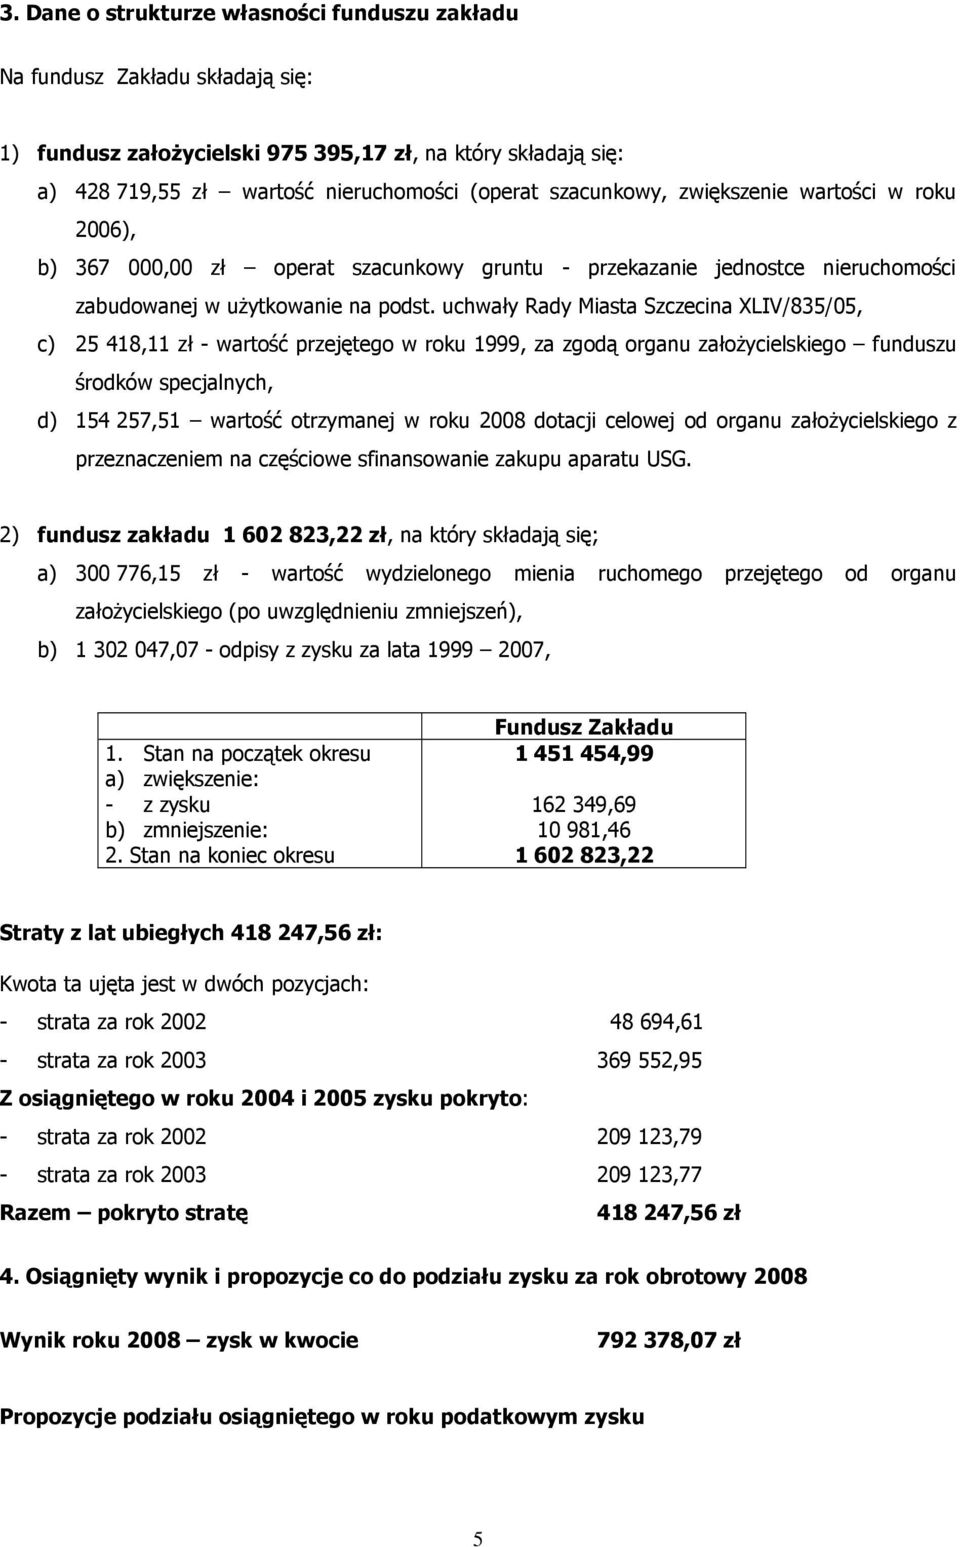 uchwały Rady Miasta Szczecina XLIV/835/05, c) 25 418,11 zł - wartość przejętego w roku 1999, za zgodą organu załoŝycielskiego funduszu środków specjalnych, d) 154 257,51 wartość otrzymanej w roku